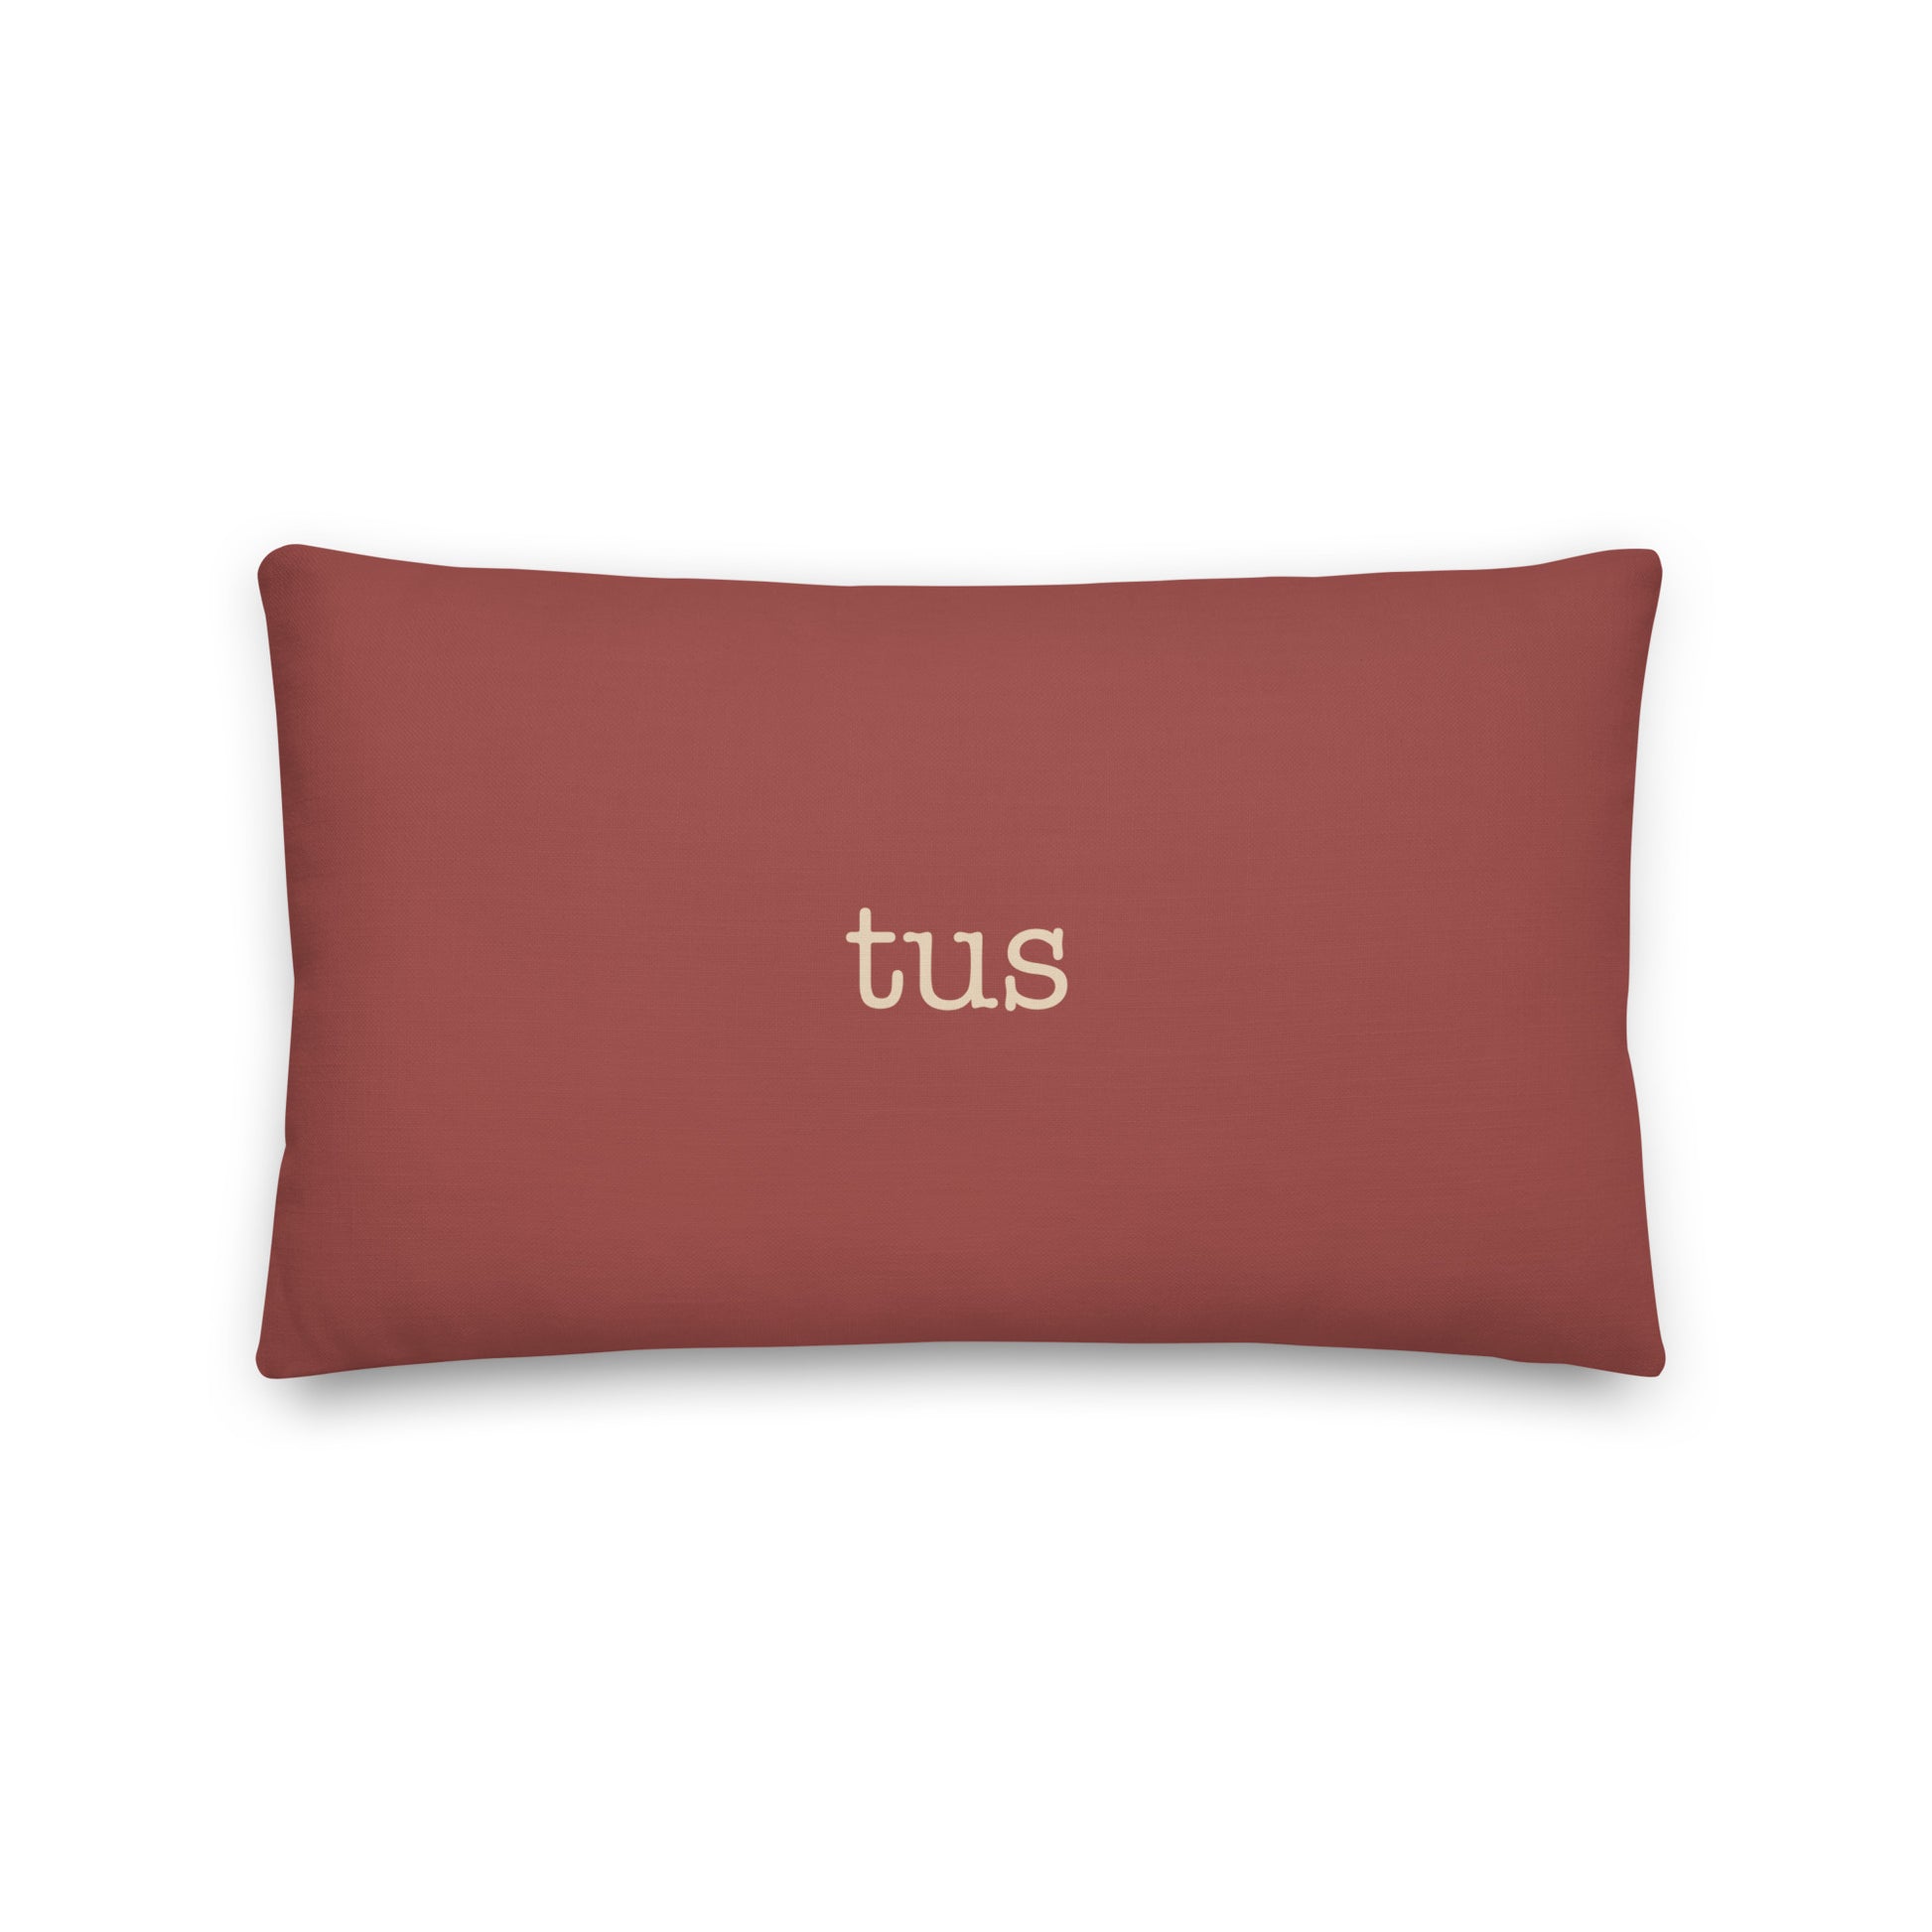 Typewriter Pillow - Terra Cotta • TUS Tucson • YHM Designs - Image 02